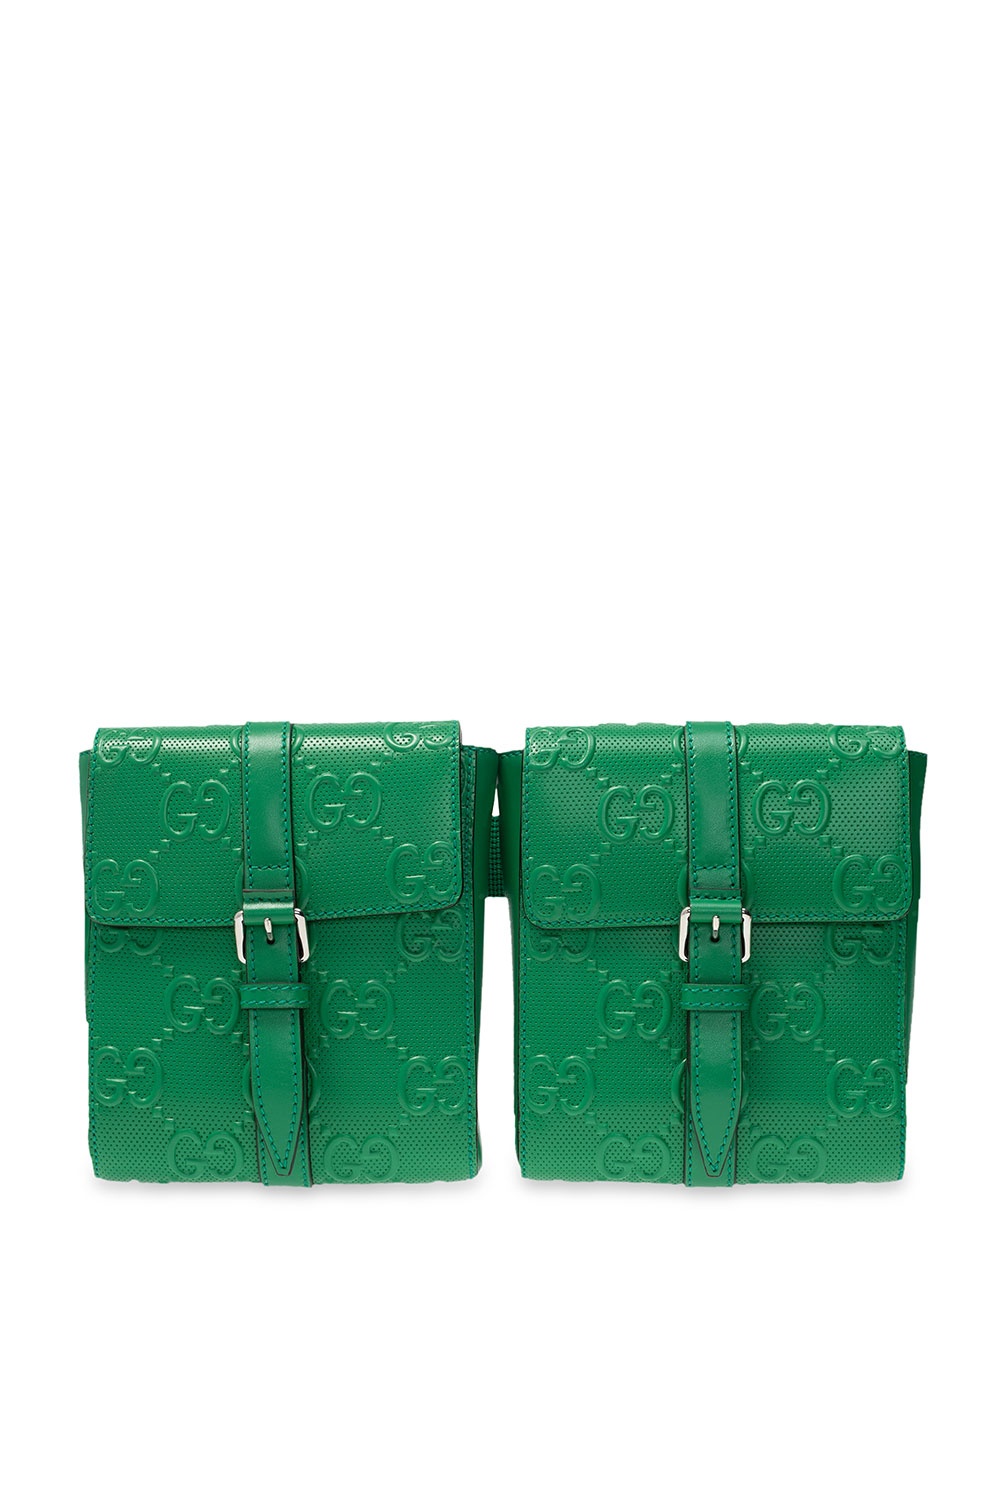 green gucci belt bag